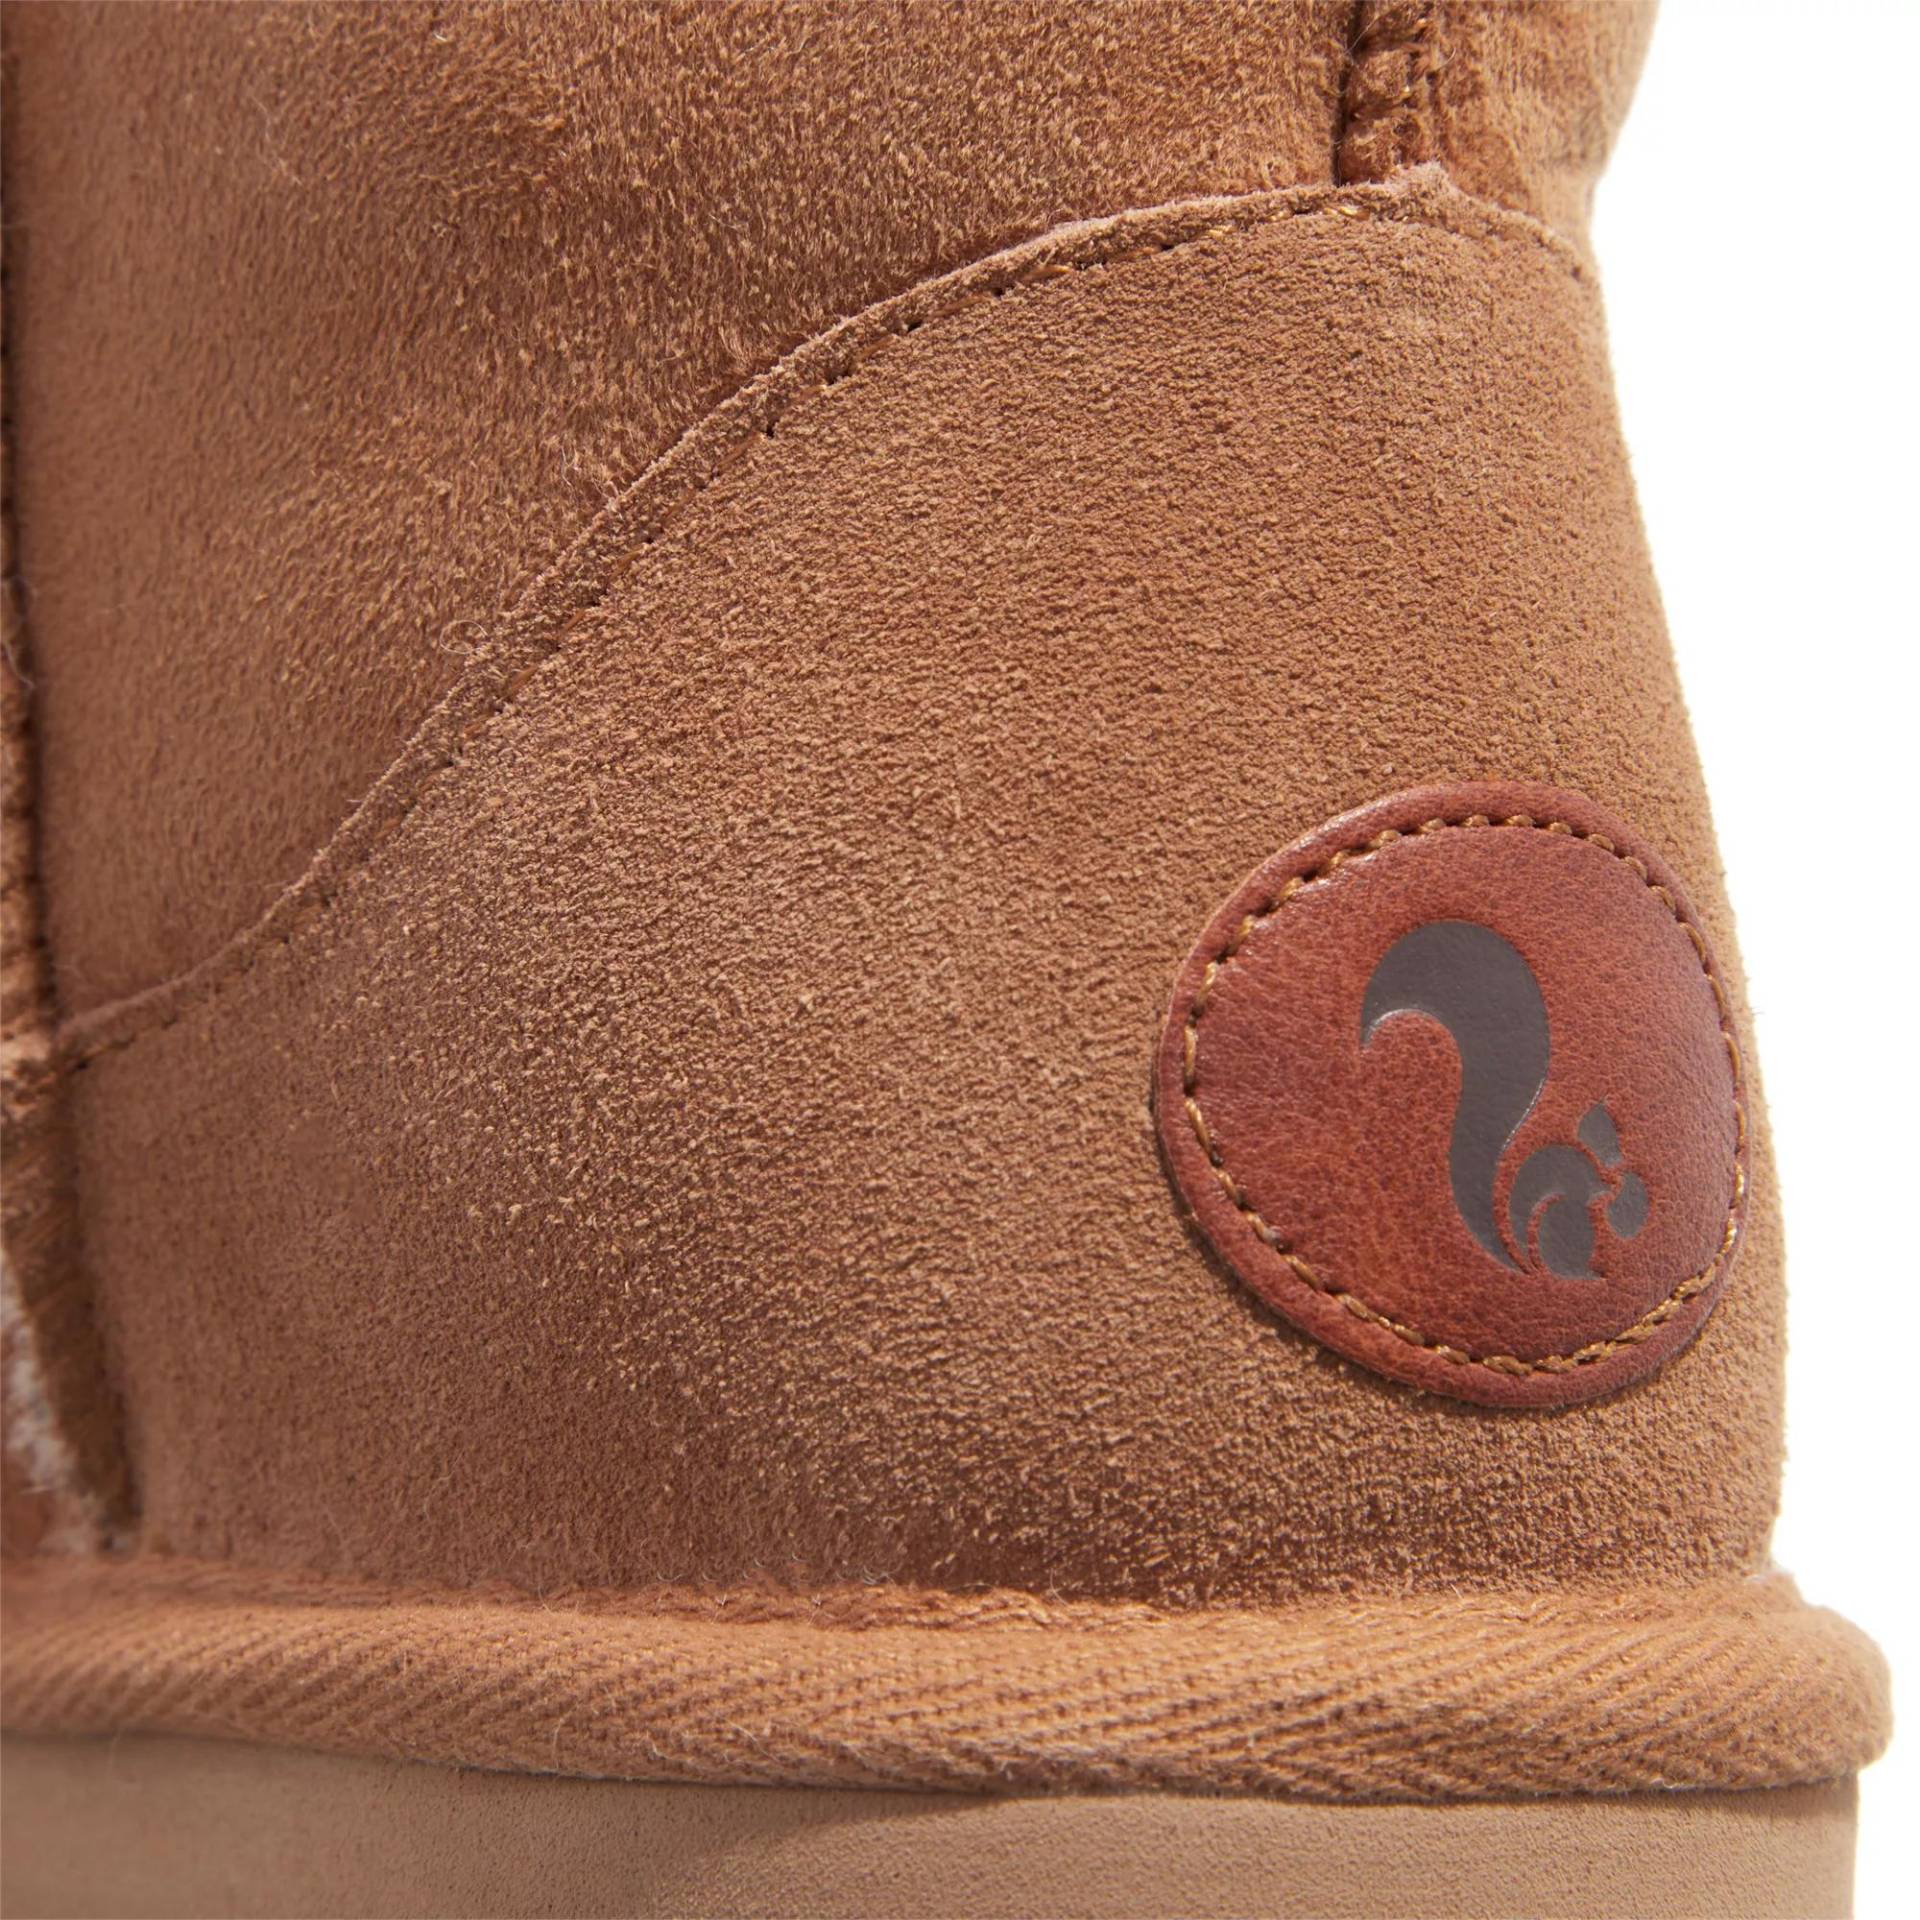 thies Sneakers - thies 1856 ® Classic Sheepskin boot cashew (W) - Gr. 39 (EU) - in Braun - für Damen von thies